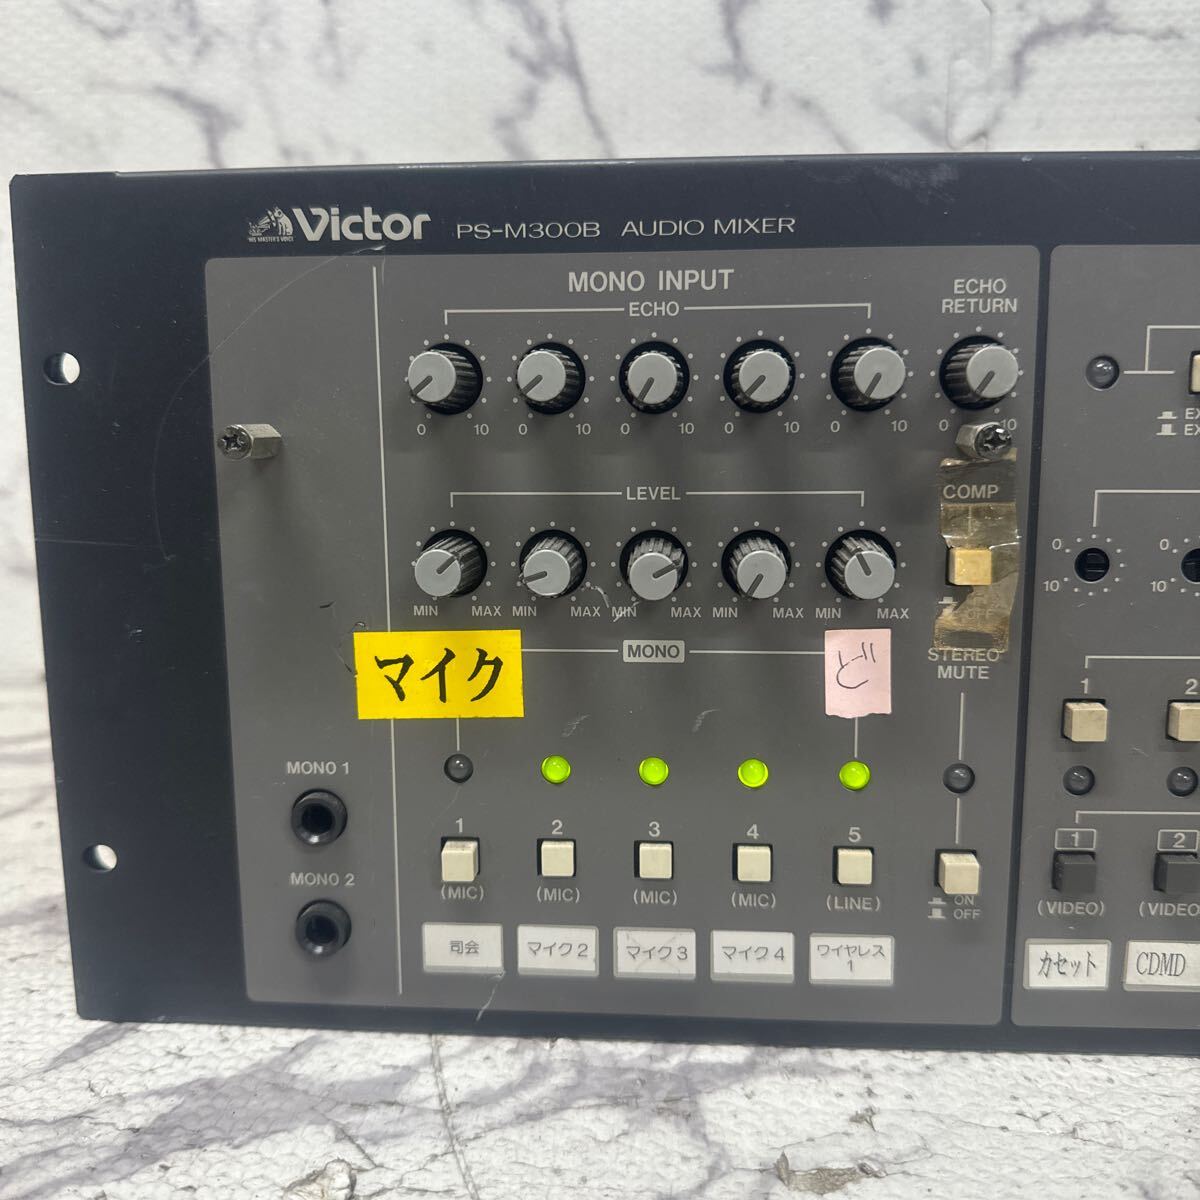 MYM5-155 супер-скидка Victor PS-M300B AUDIO MIXER Voss аудио миксер электризация OK б/у текущее состояние товар *3 раз повторная выставка . ликвидация 